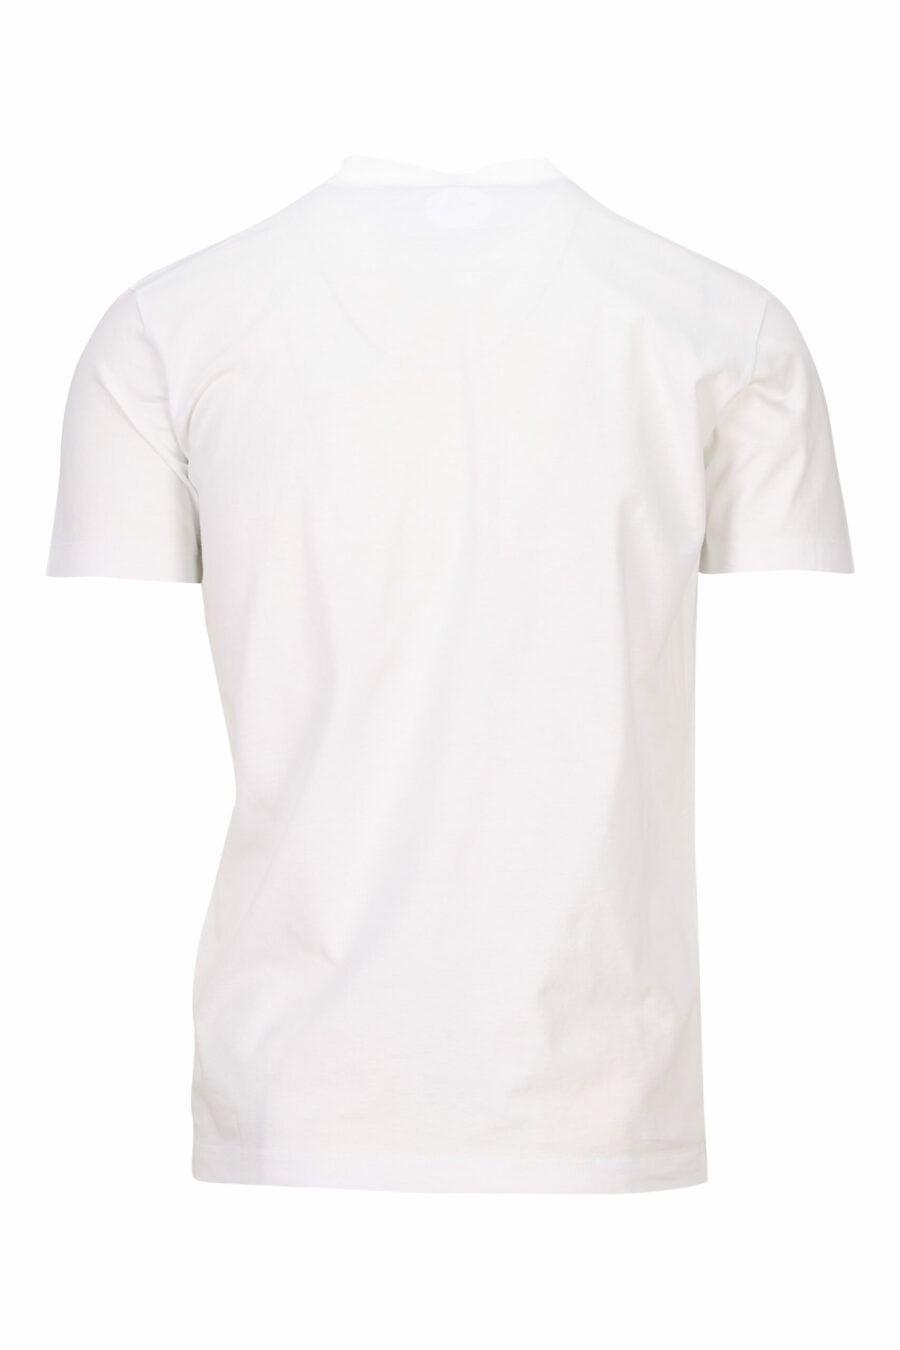 T-shirt branca com maxilogo de cão de basquetebol - 8054148332594 1 à escala